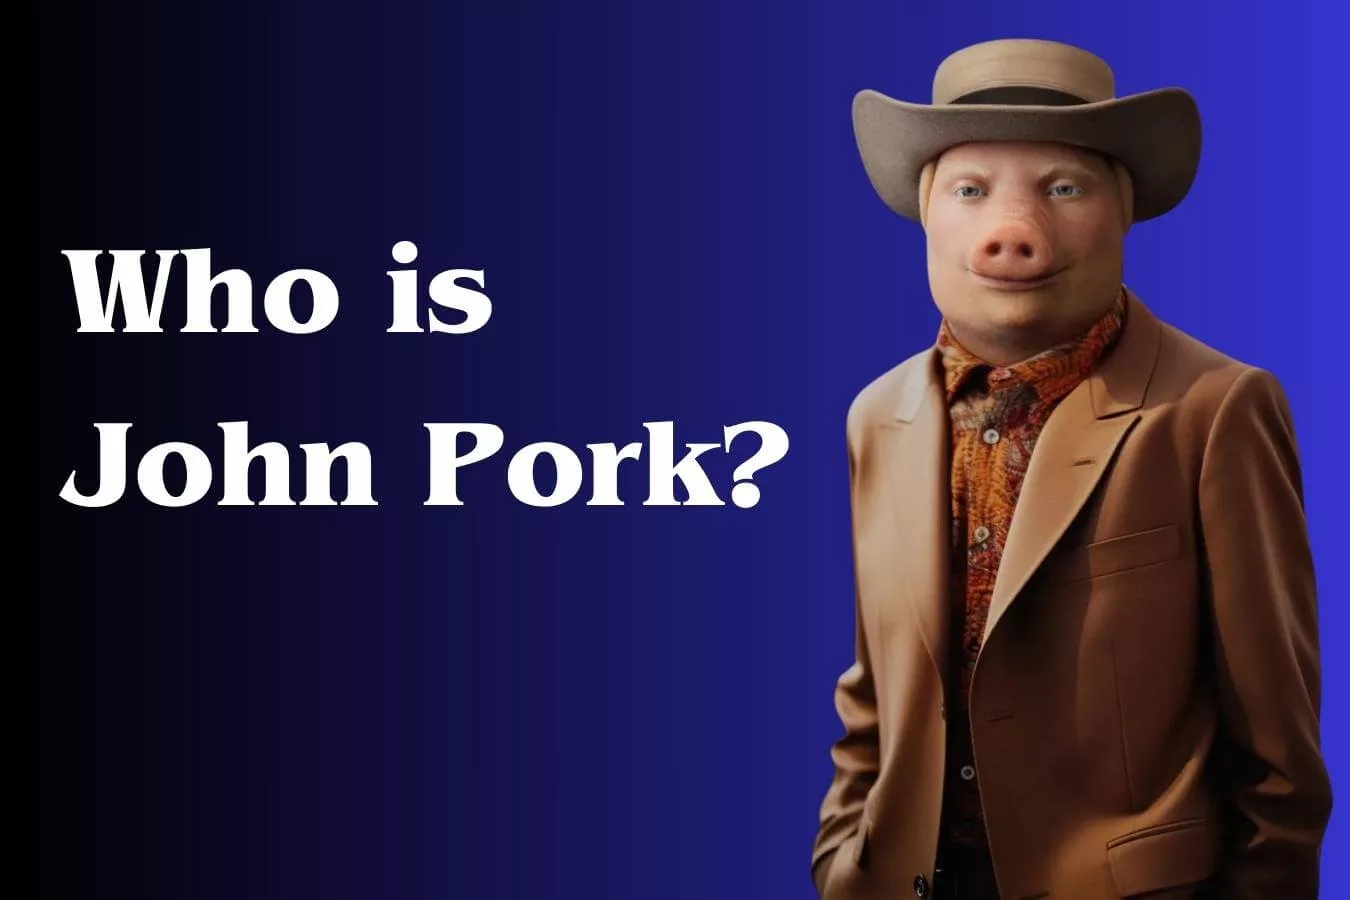 Who is John Pork?